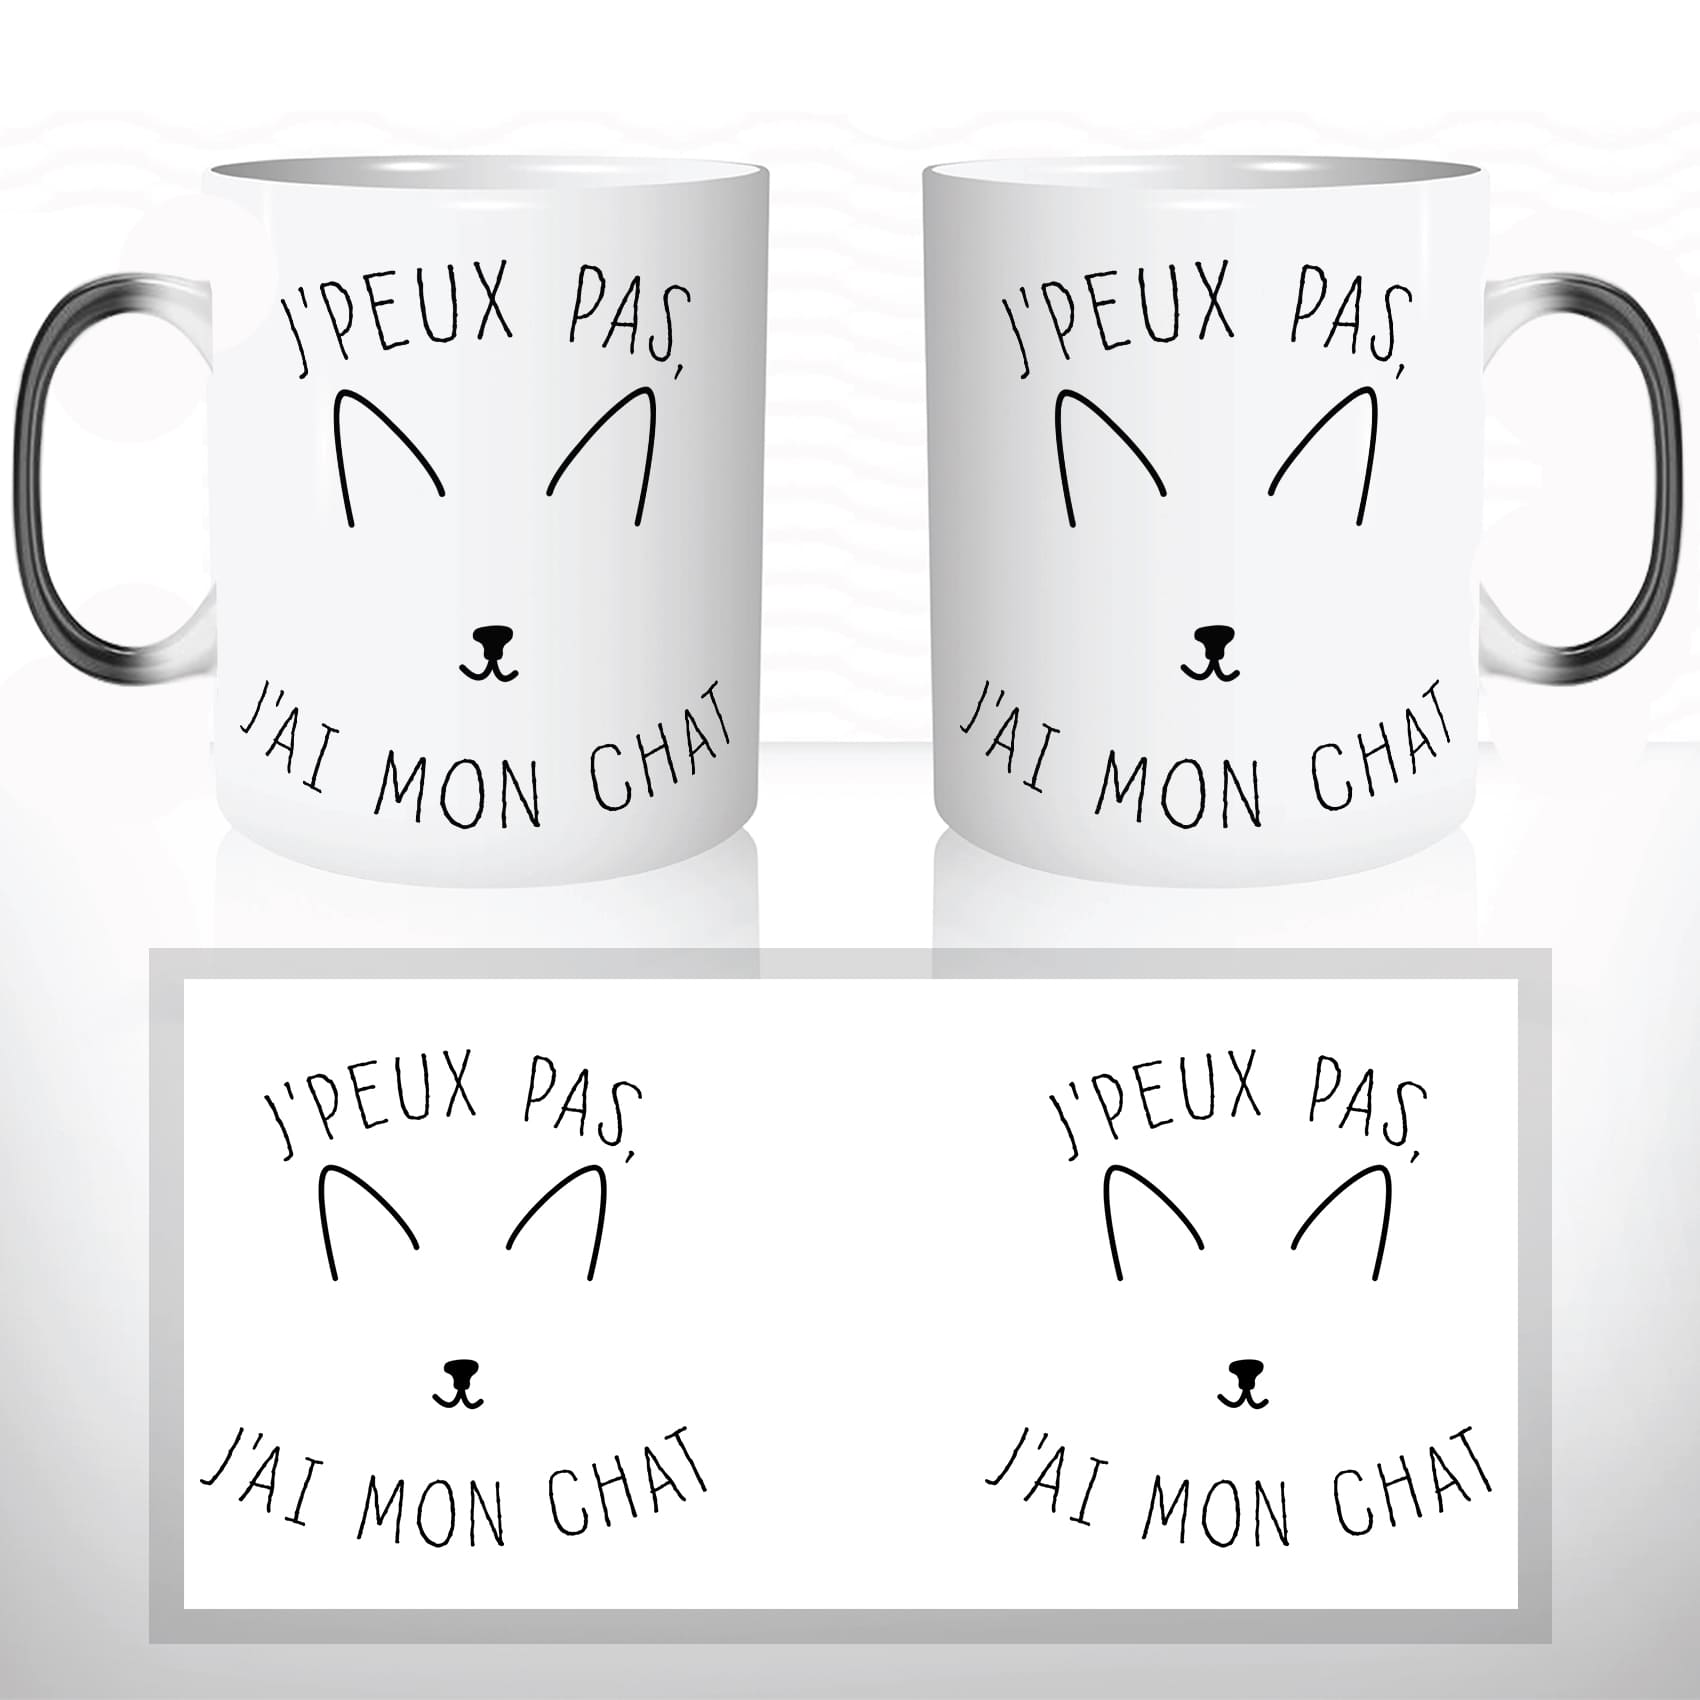 mug-magique-magic-tasse-originale-thermique-jpeux-pas-jai-mon-chat-drole-original-animal-chaton-offrir-idée-cadeau-fun-café-thé-chocolat-2